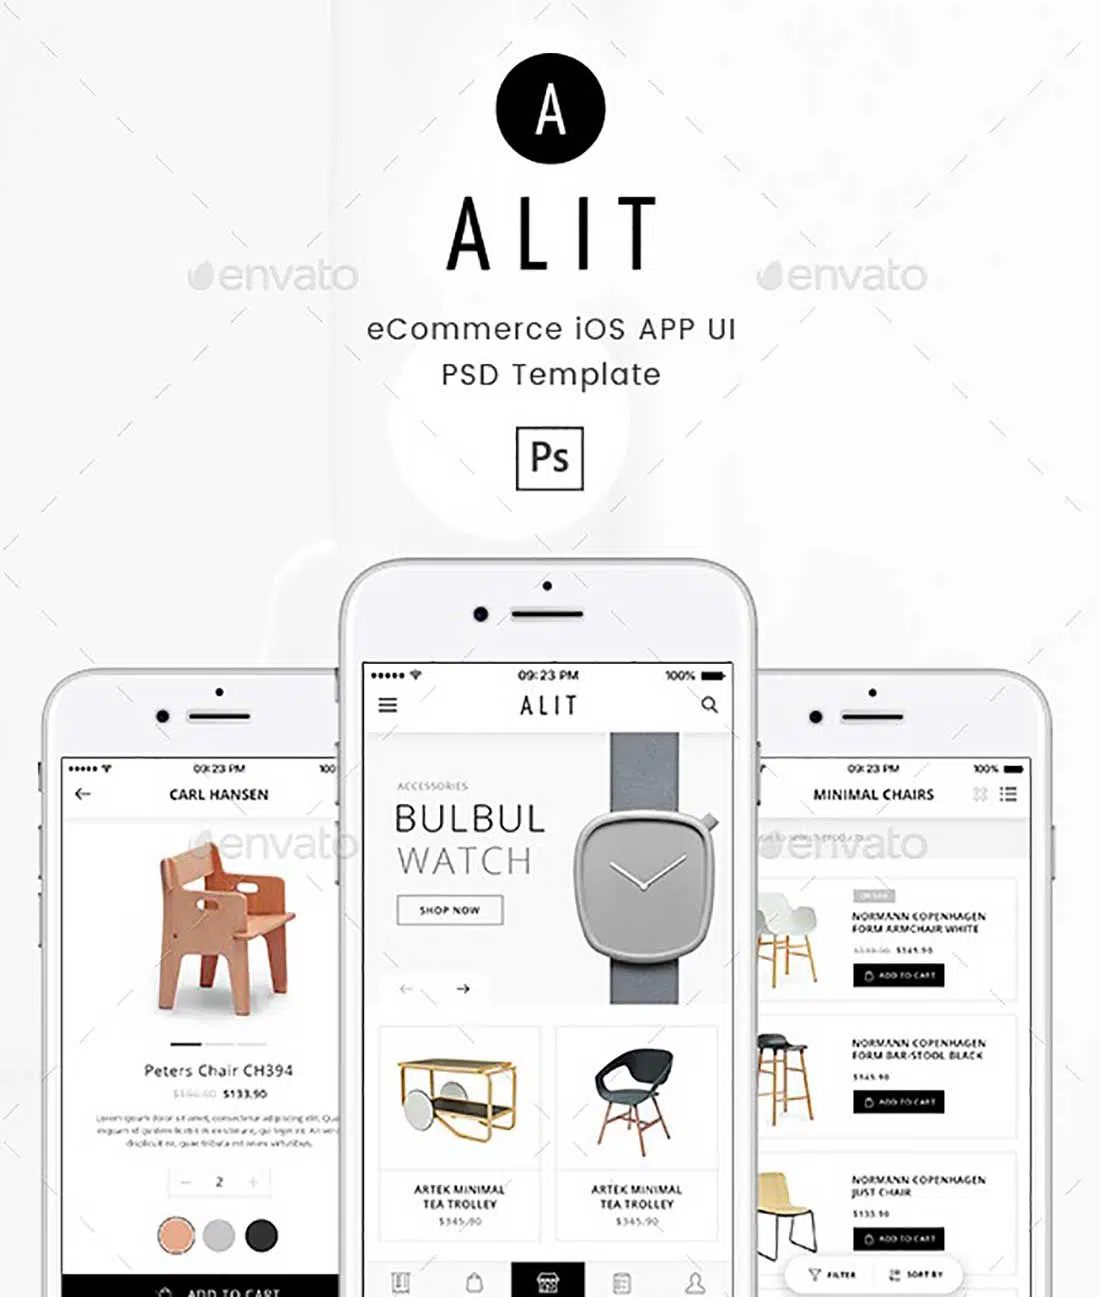 13 Alit - Minimalist eCommerce PSD UI for iOS App